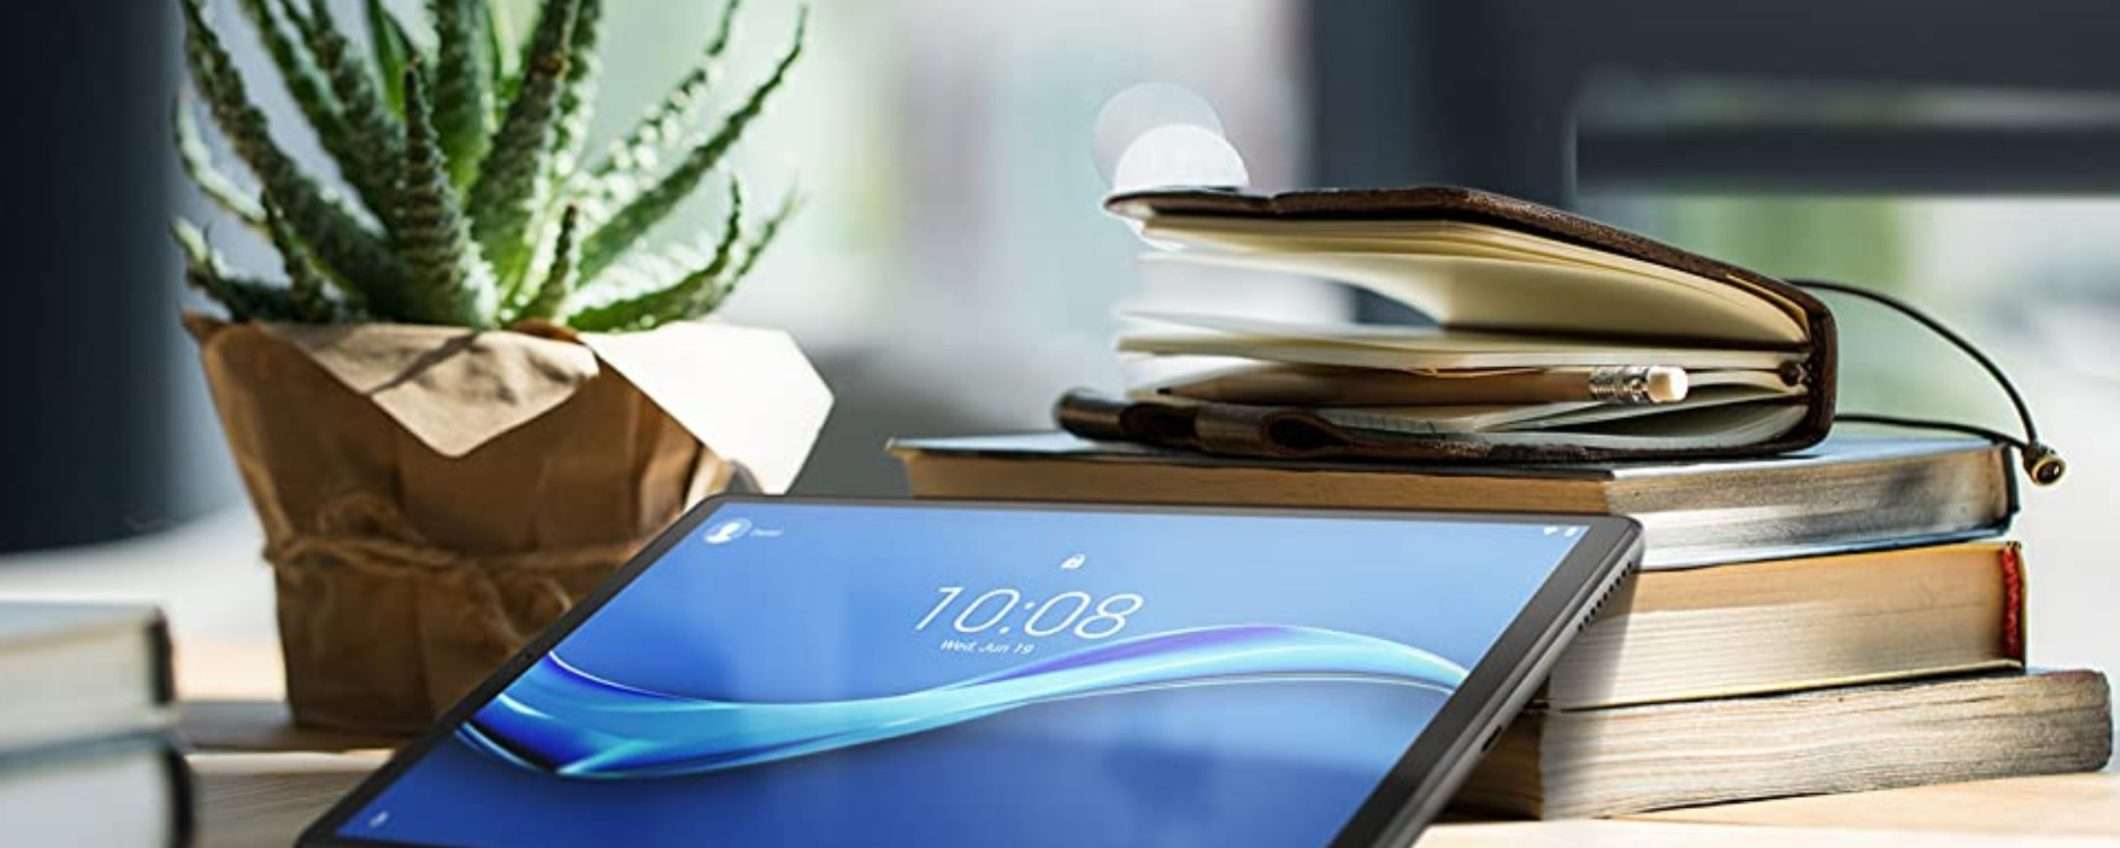 Lenovo Tab M10: display HD e tanta qualità a un prezzo MAI VISTO